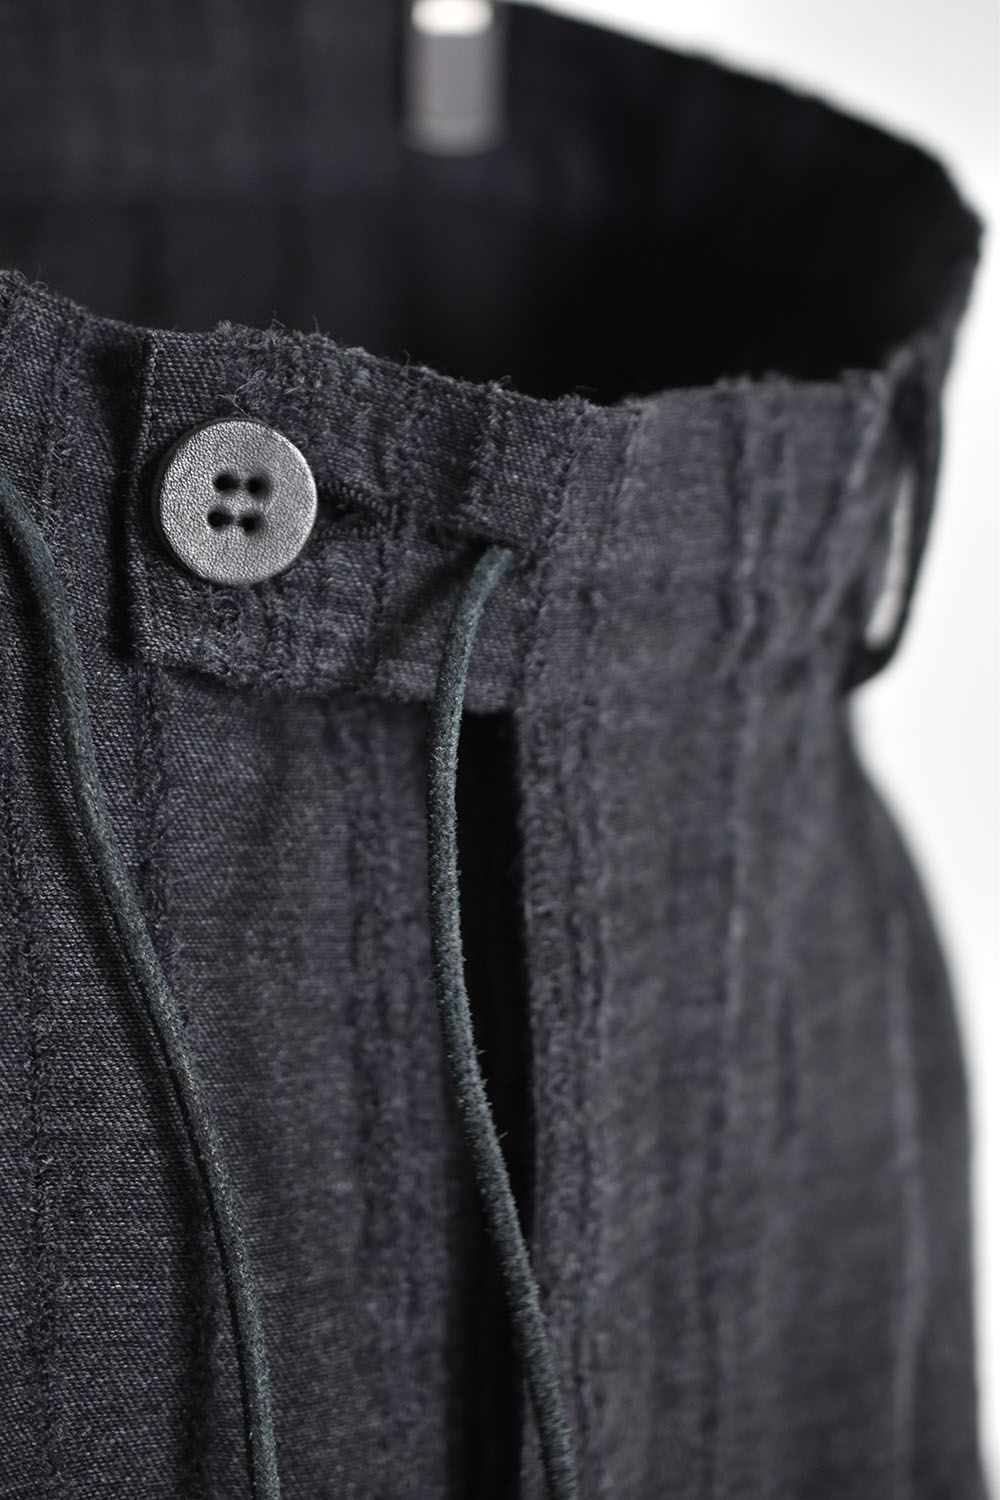 Wool Rayon Jacquard strap Layered cropped pants"Charcoal"/ウール×レーヨン破れジャガードストライプレイヤードクロップドパンツ